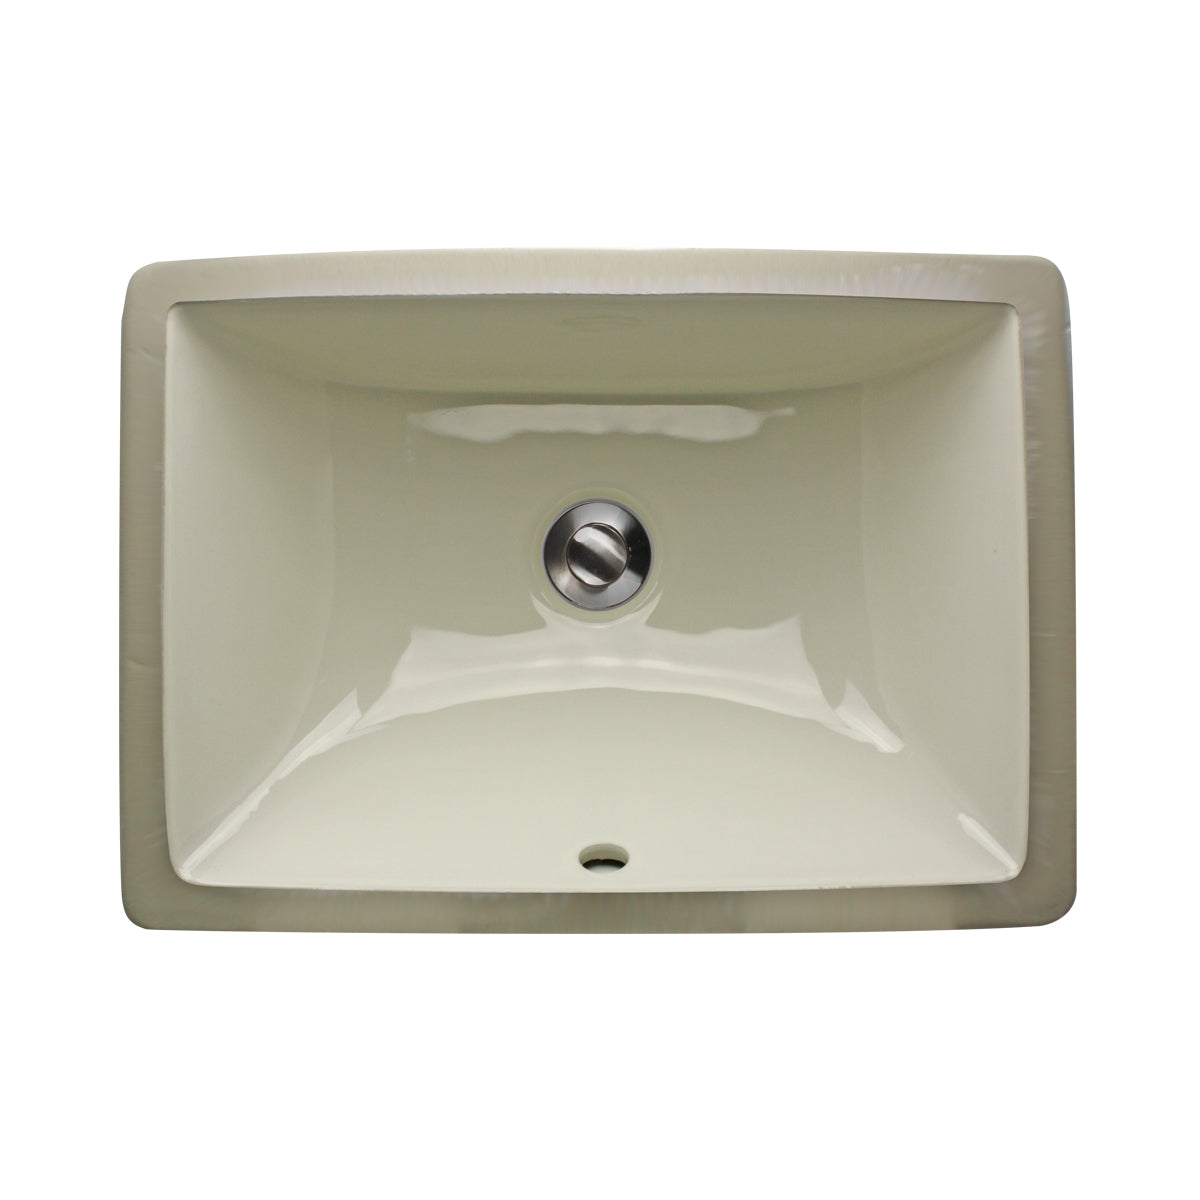 Nantucket Sinks  16 Inch X 11 Inch Undermount Ceramic Sink In Bisque UM-16x11-B